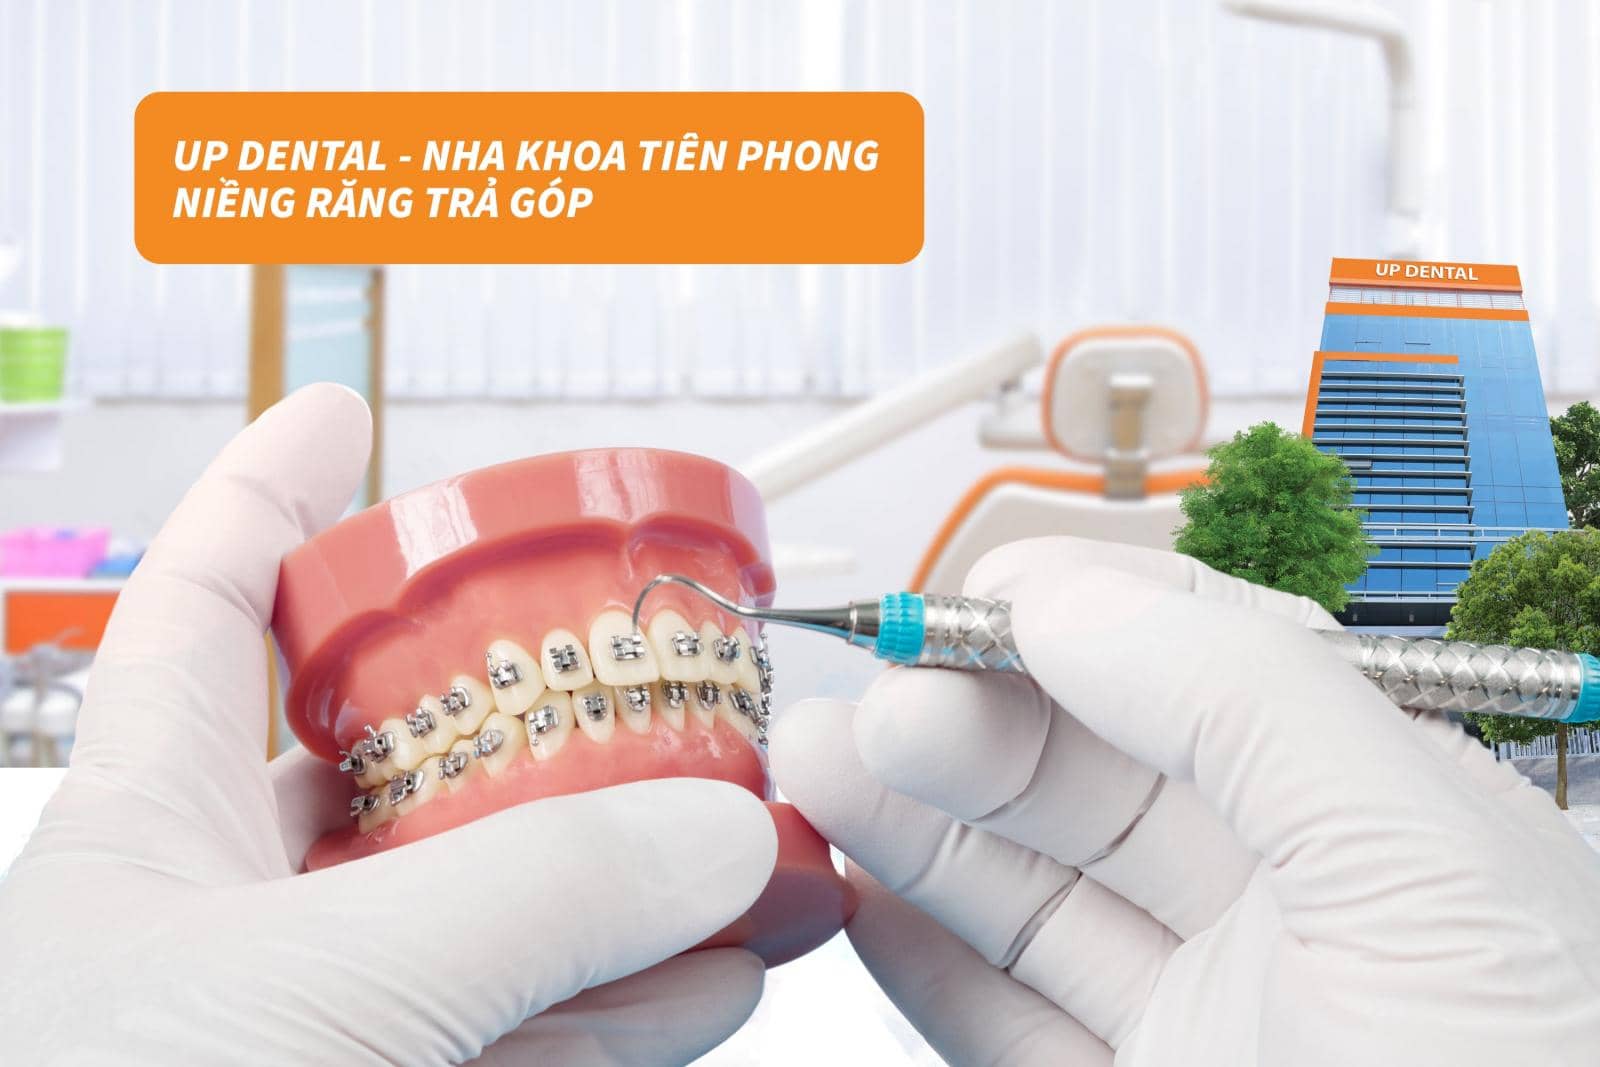 Up-Dental-nha-khoa-tien-phong-tra-gop-tai-tphcm